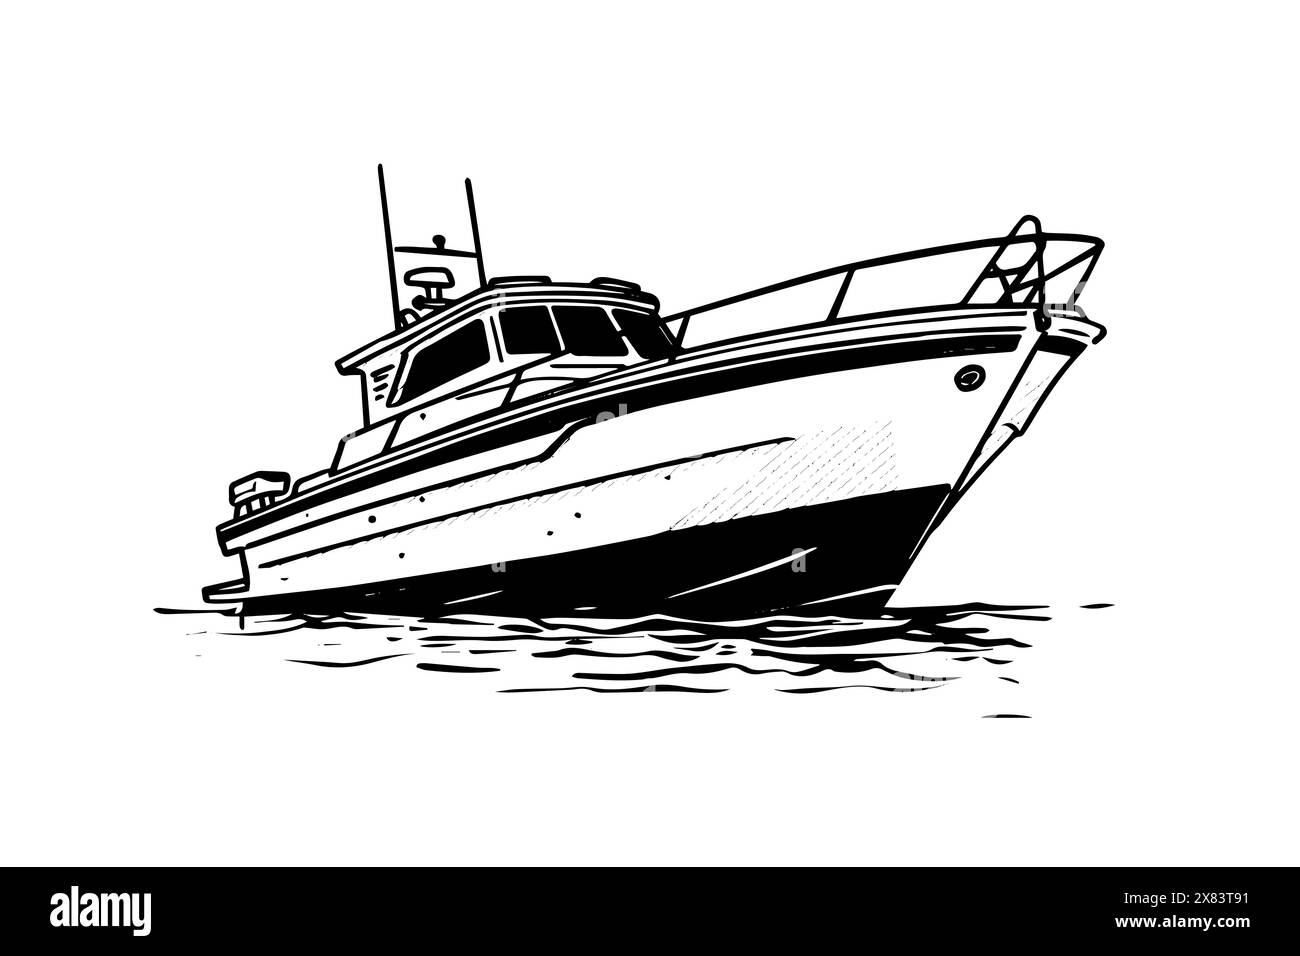 Disegno vettoriale dello yacht Super Cruise. Estrazione di pesca in bordata. Illustrazione Vettoriale